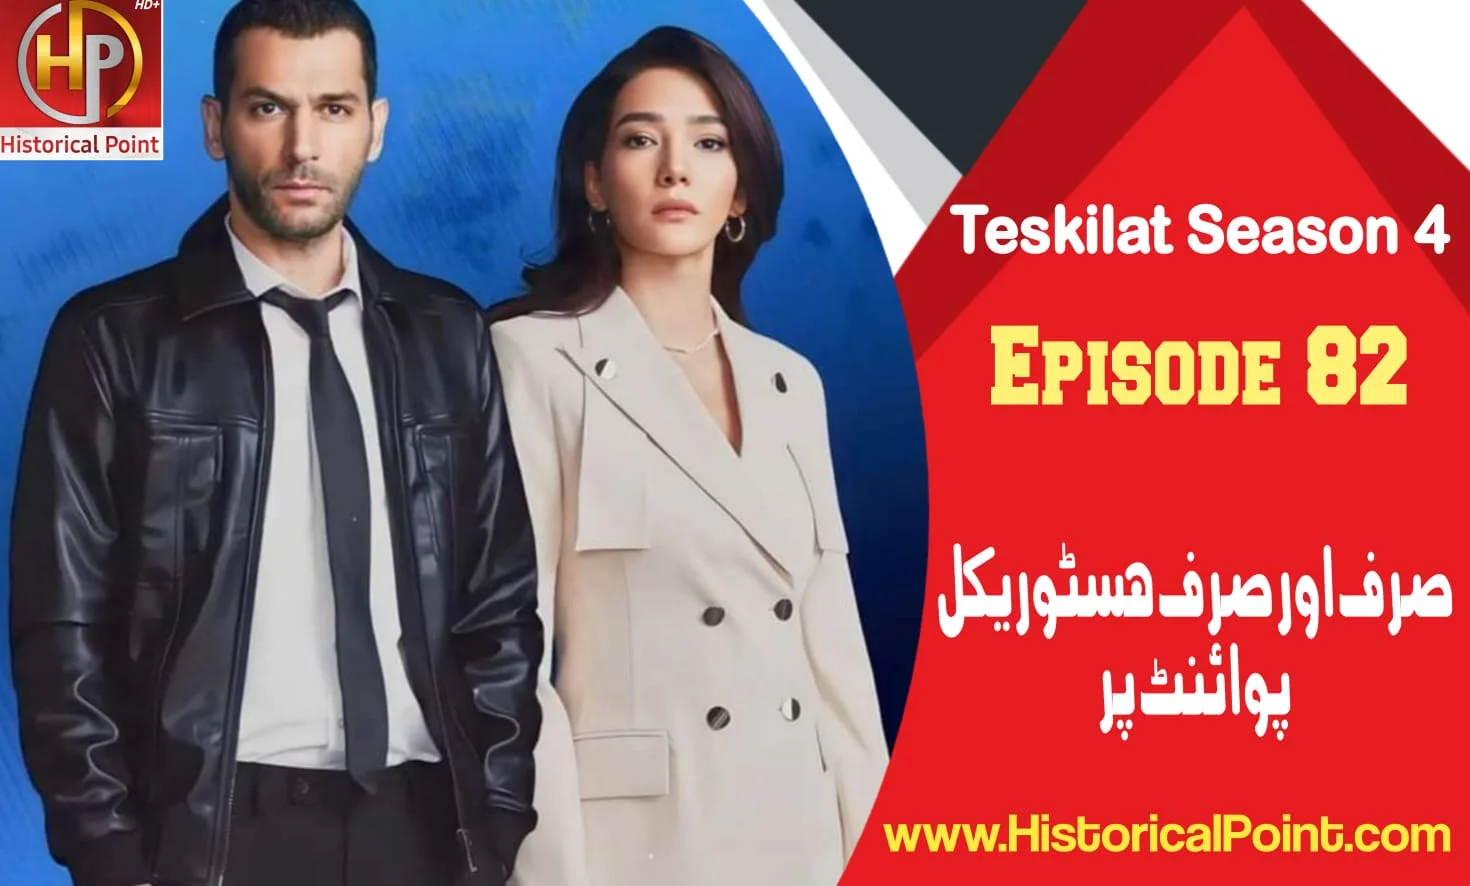 Teskilat Season 4 Episode 82 review in urdu